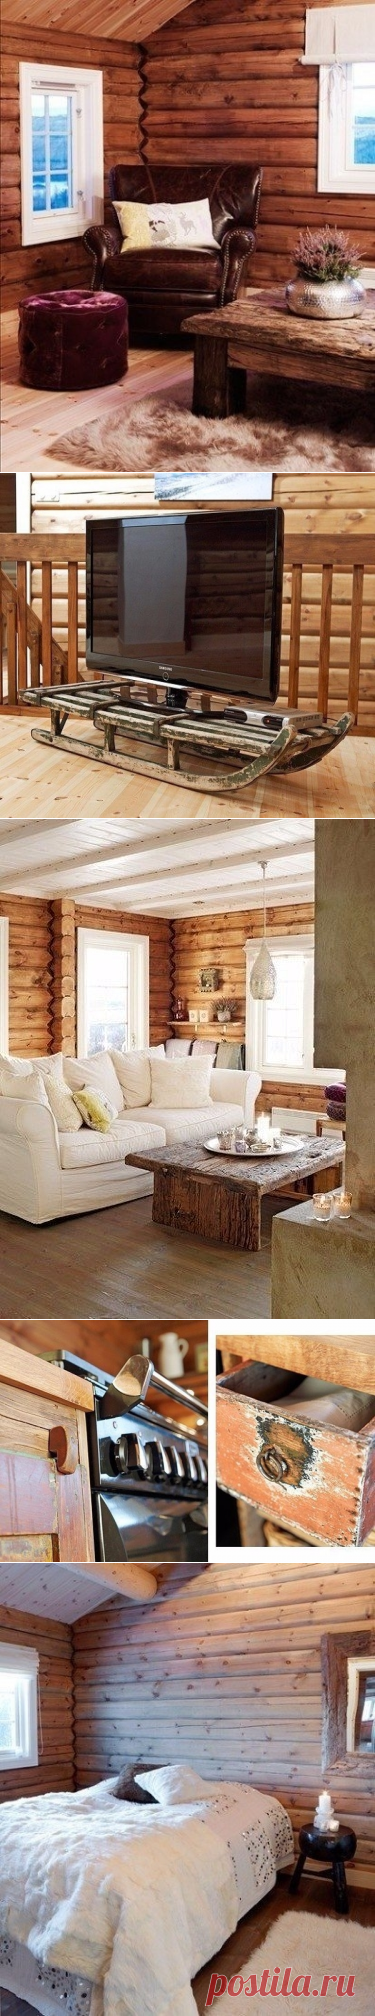 Чудесный деревянный дом - Дизайн интерьеров | Идеи вашего дома | Lodgers